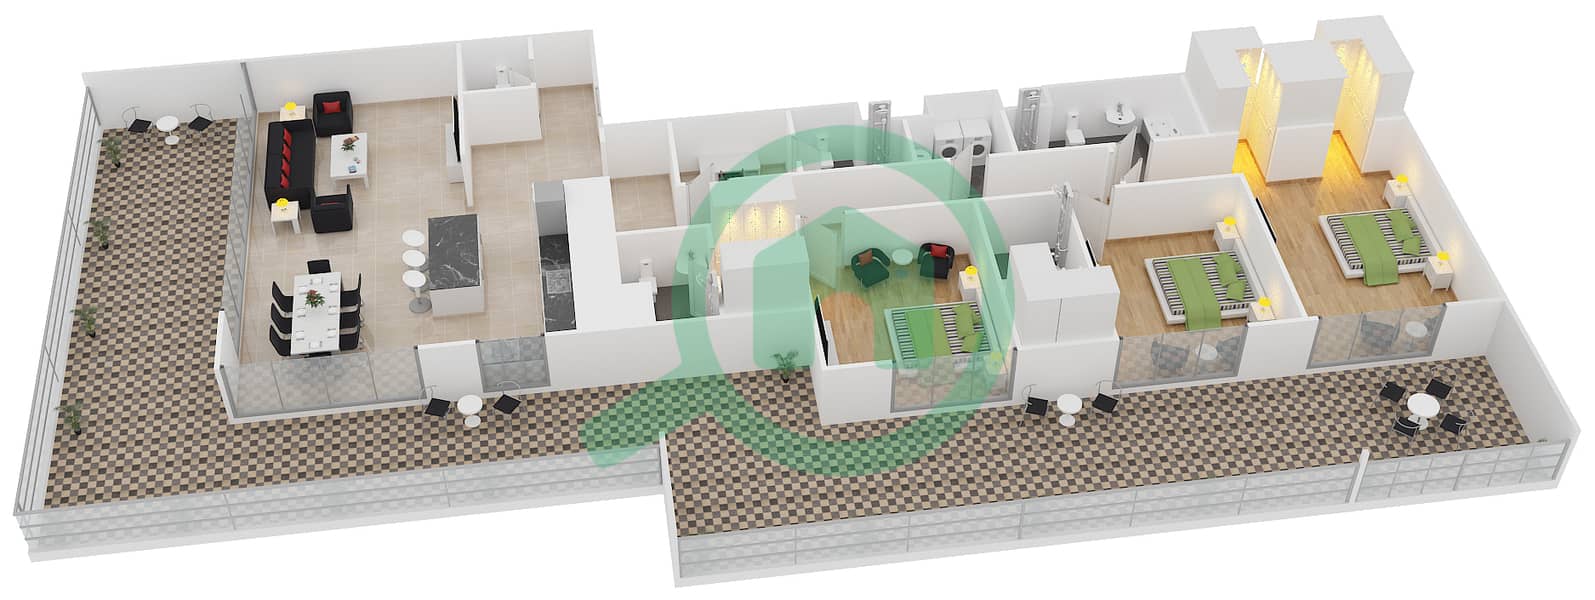 Belgravia - 3 Bedroom Apartment Type 13 Floor plan interactive3D